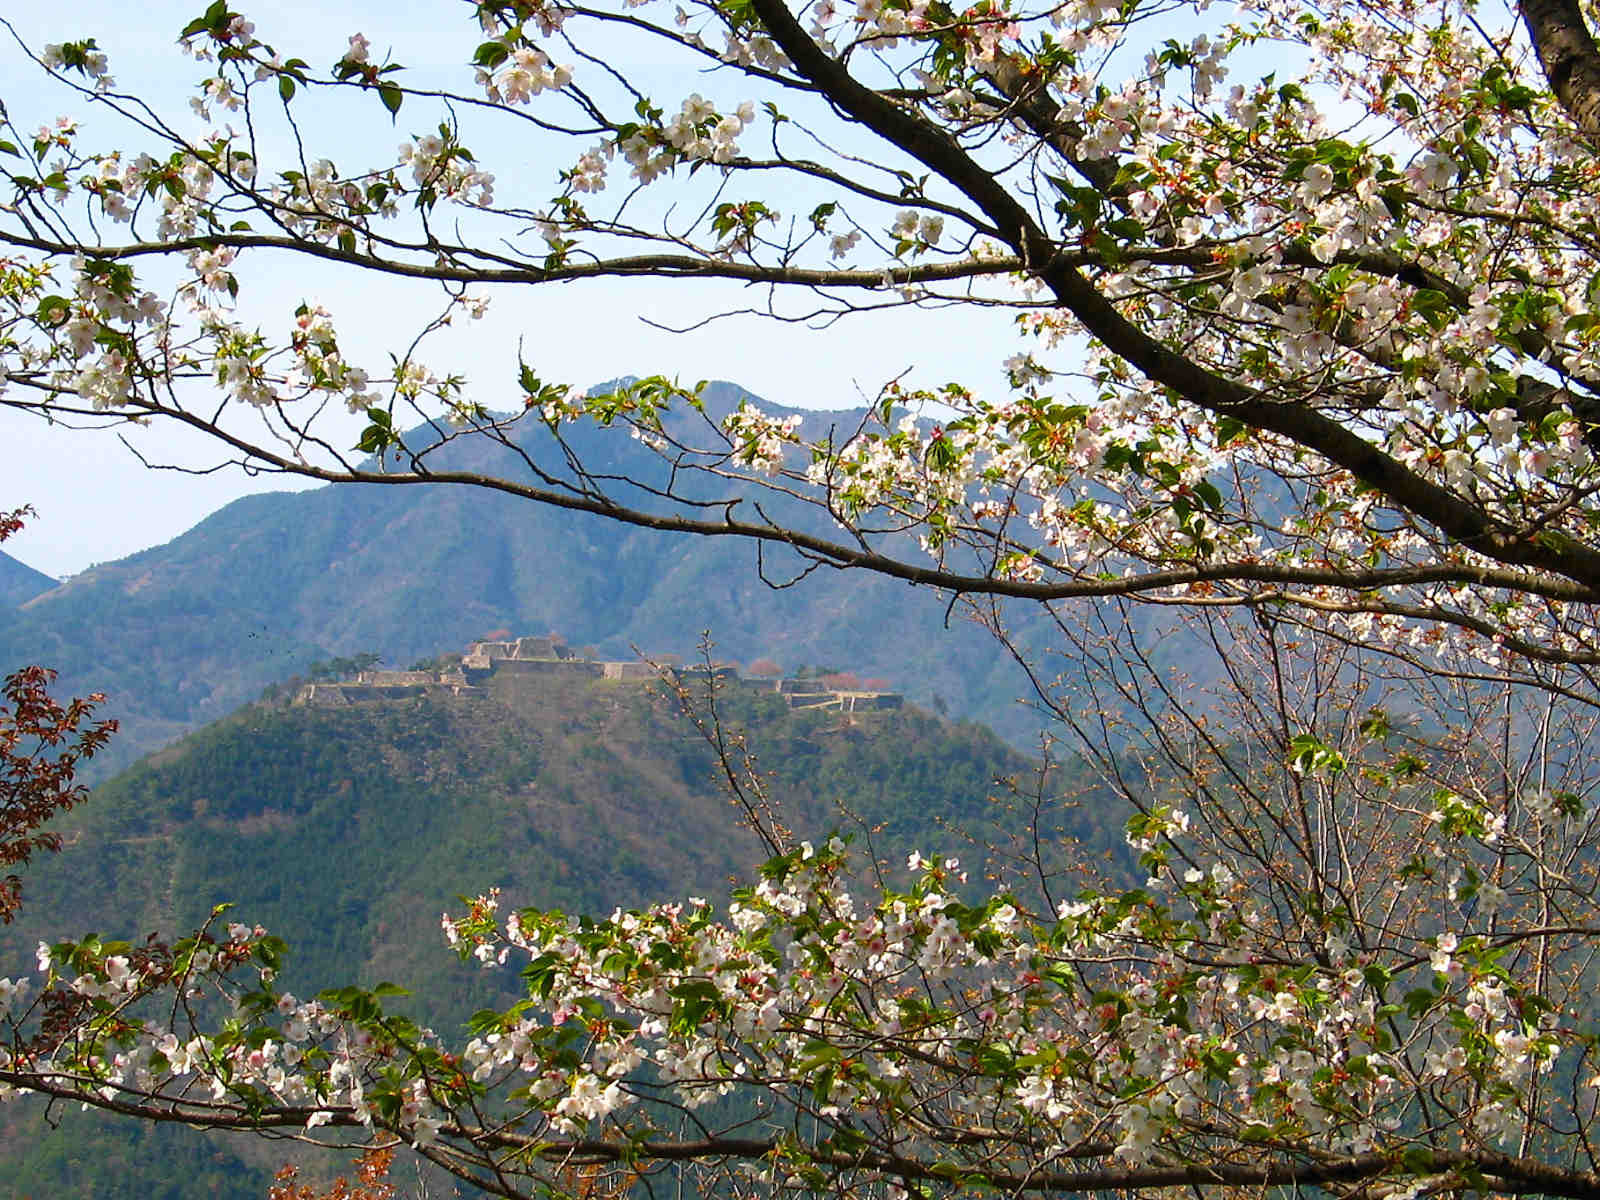 立雲峡桜まつり 竹田城跡を望める絶景の桜